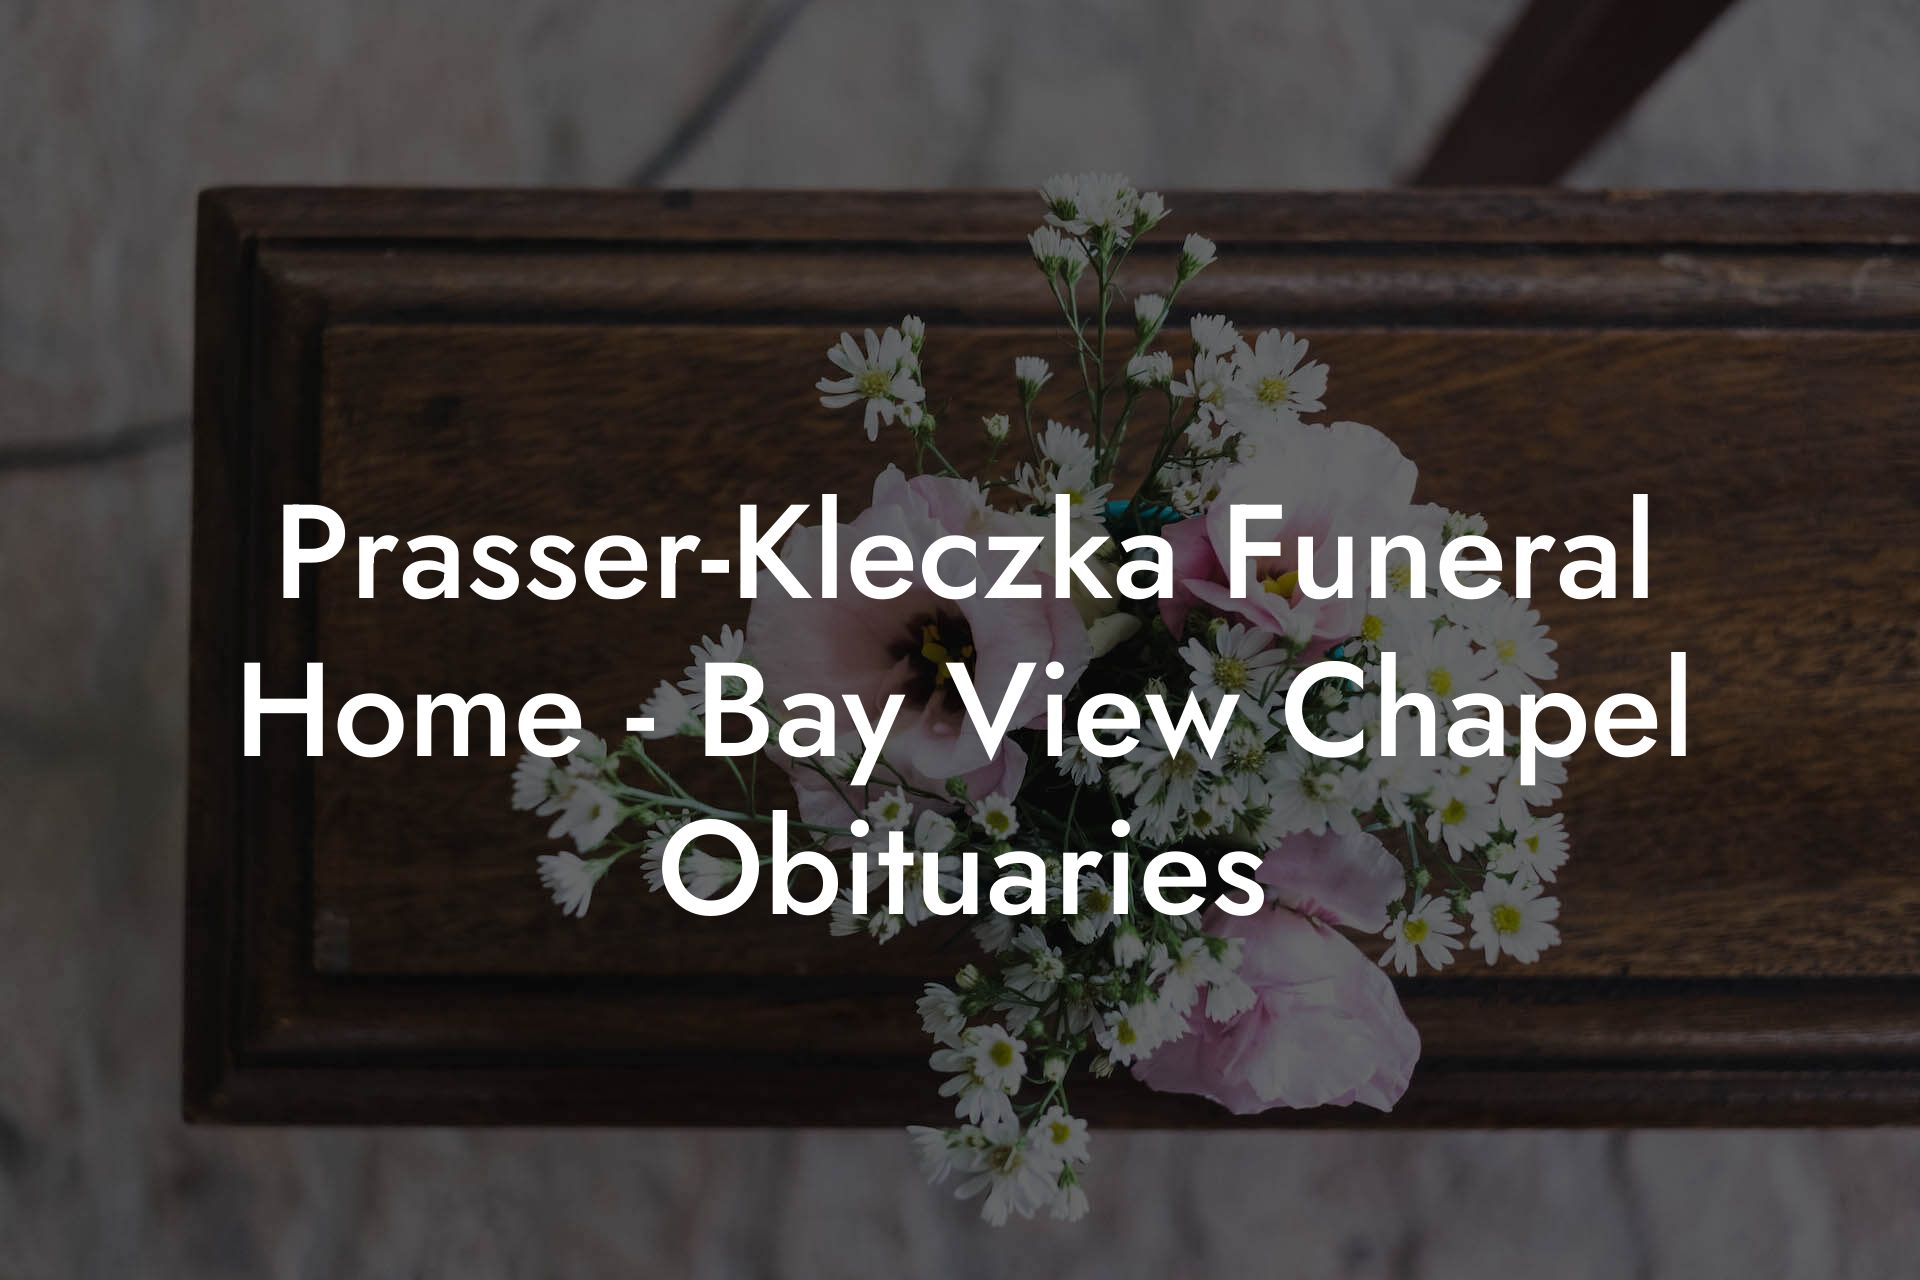 Prasser-Kleczka Funeral Home - Bay View Chapel Obituaries